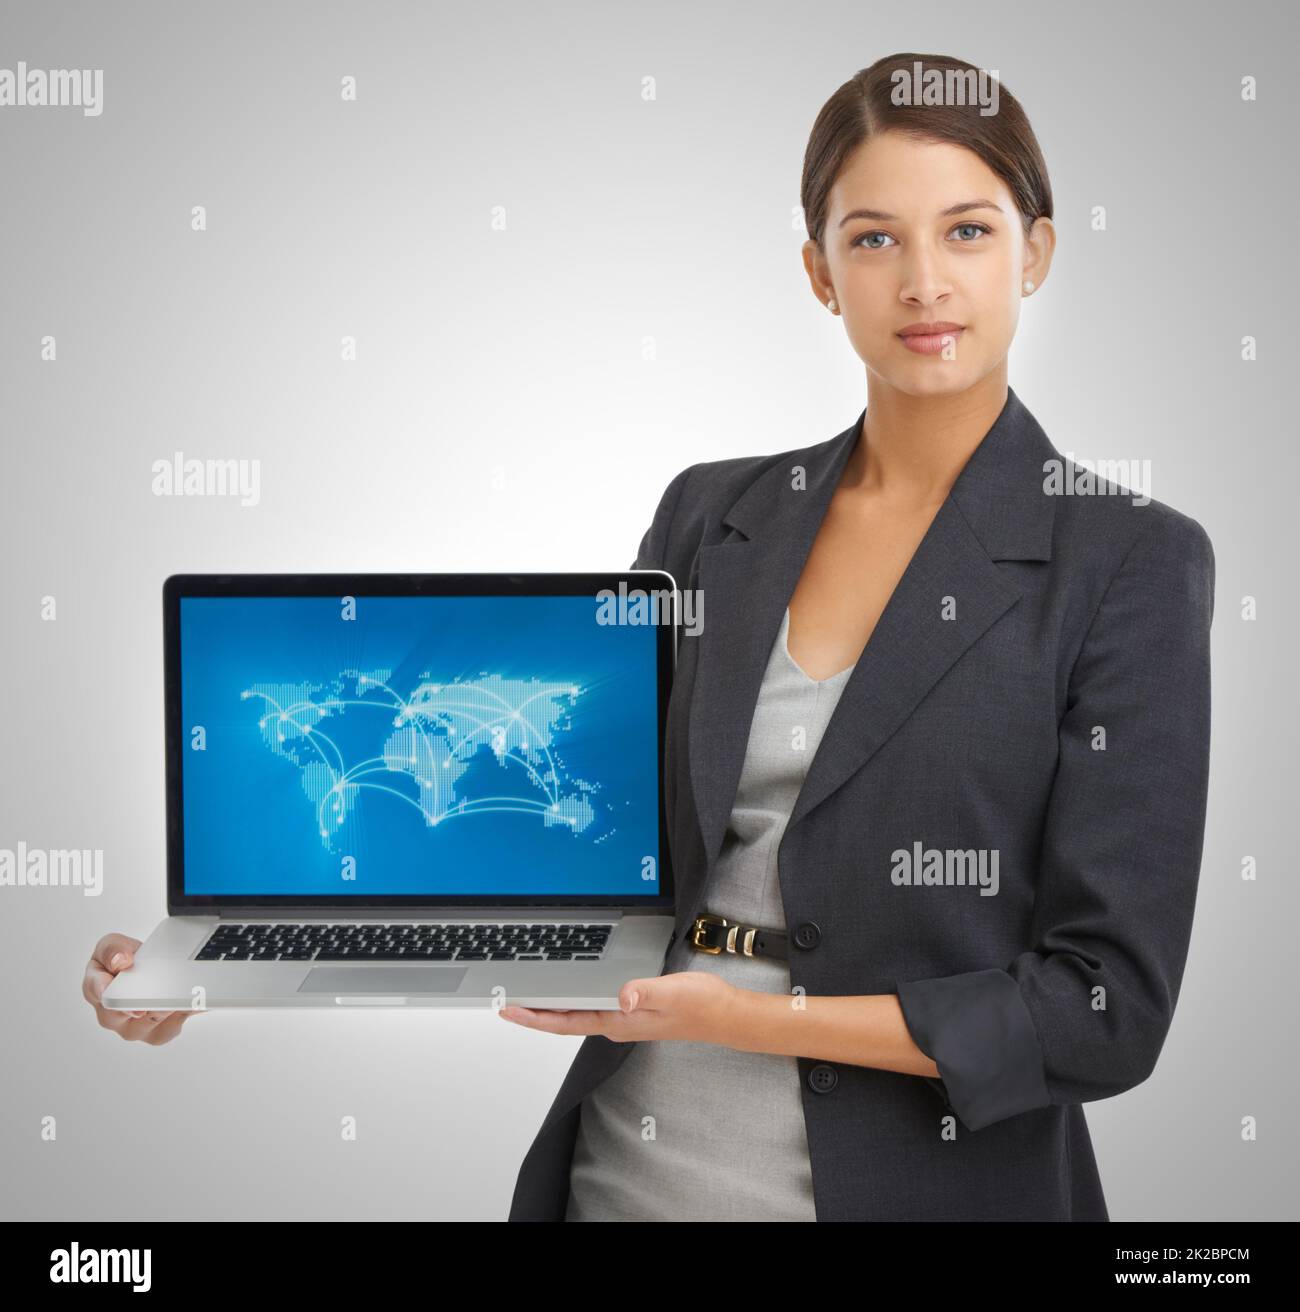 Wir sind global geworden. Studio-Porträt einer Geschäftsfrau mit einem Laptop, auf dem eine Weltkarte mit Standorten zu sehen ist. Stockfoto